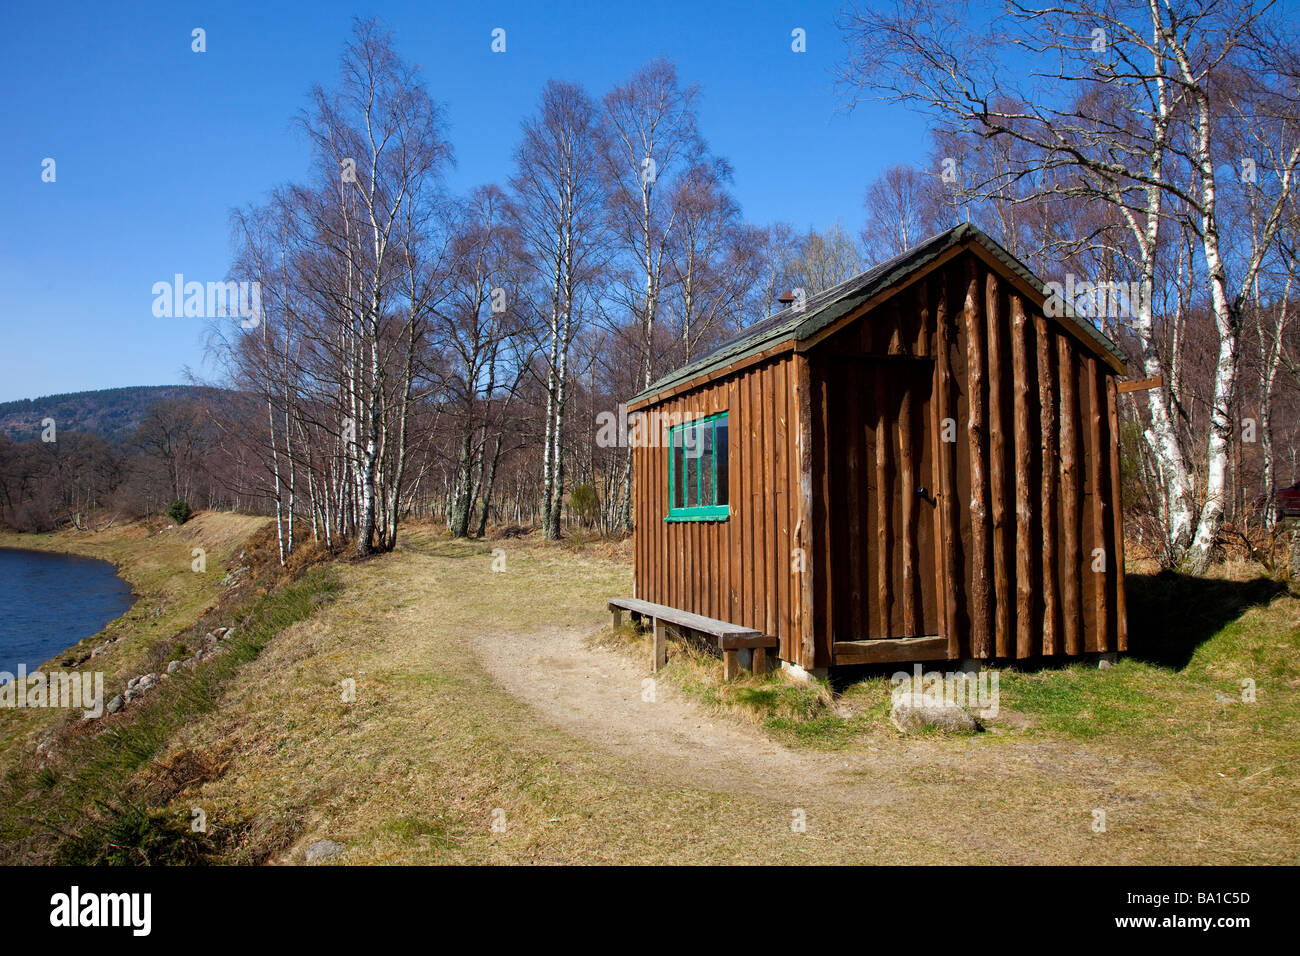 Refuge en bois de pêcheur de saumon, refuge, cabane, maison, paysage au bord de la rivière Dee, Aberdeen, Aberdeenshire, Écosse, Royaume-Uni Banque D'Images